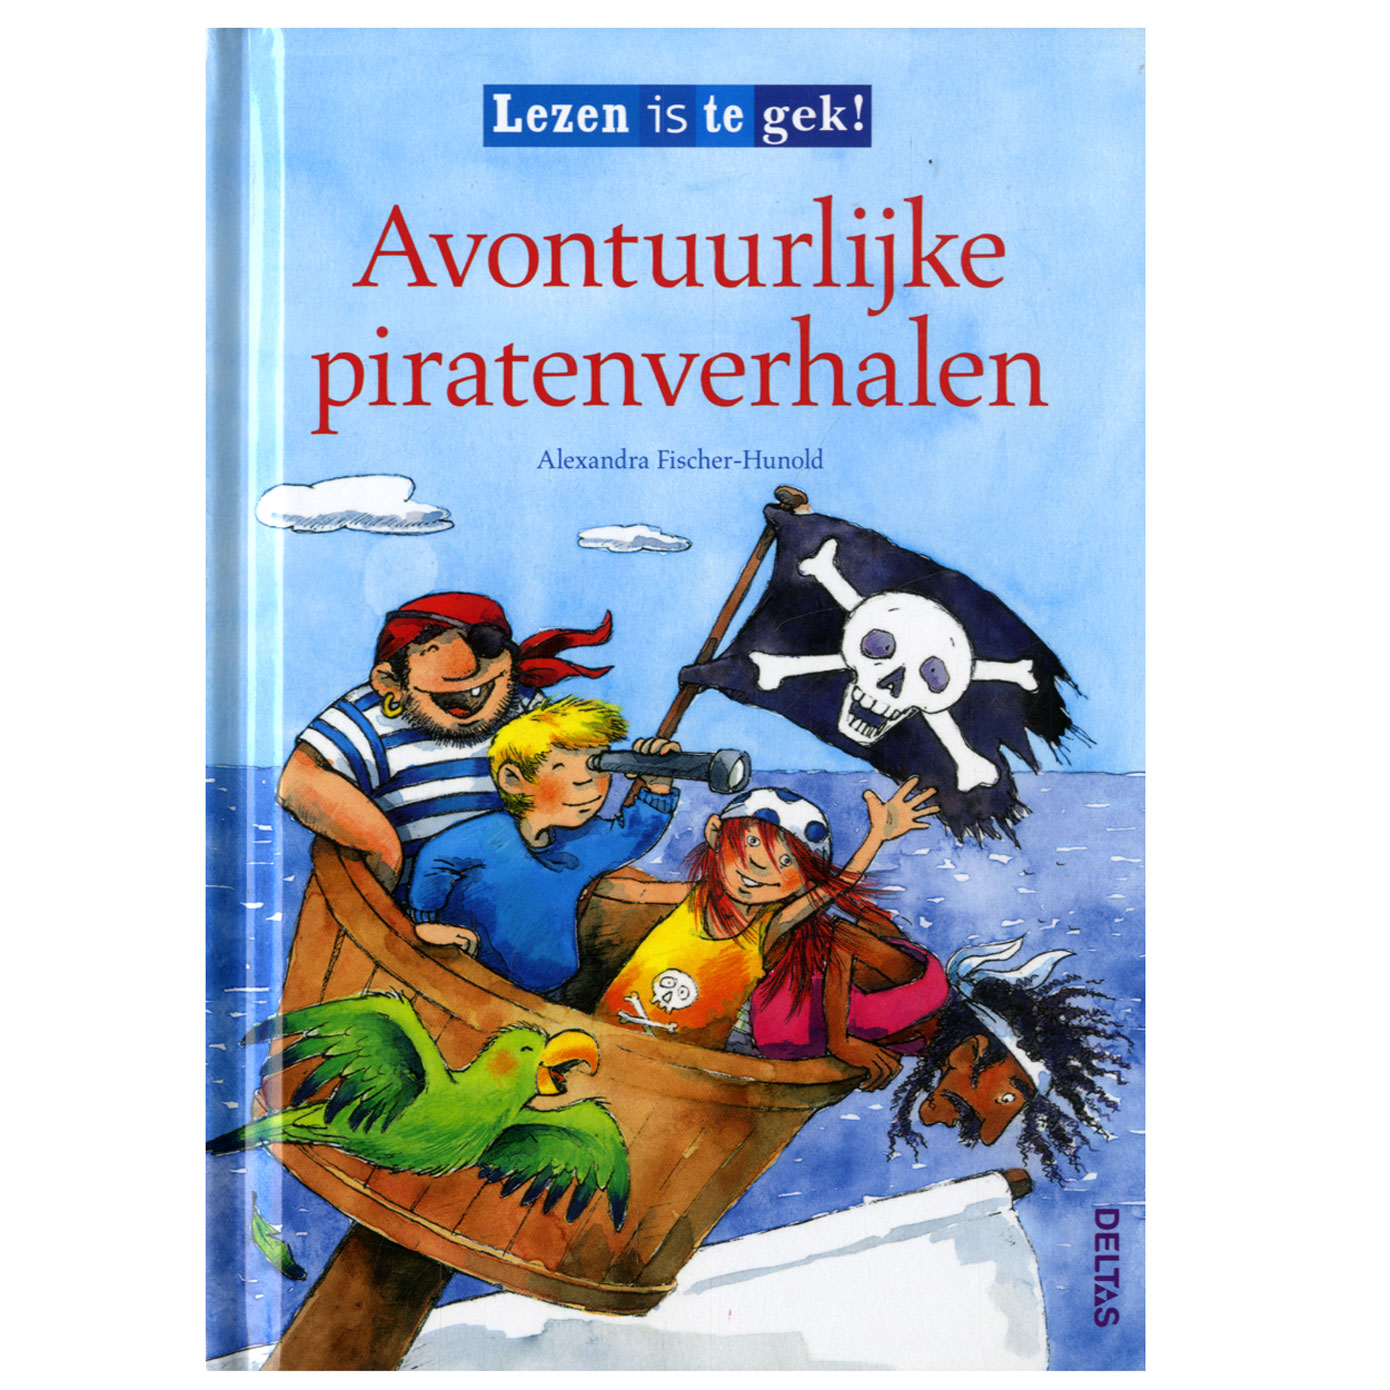 Avontuurlijke piratenverhalen (vanaf 7 jaar)